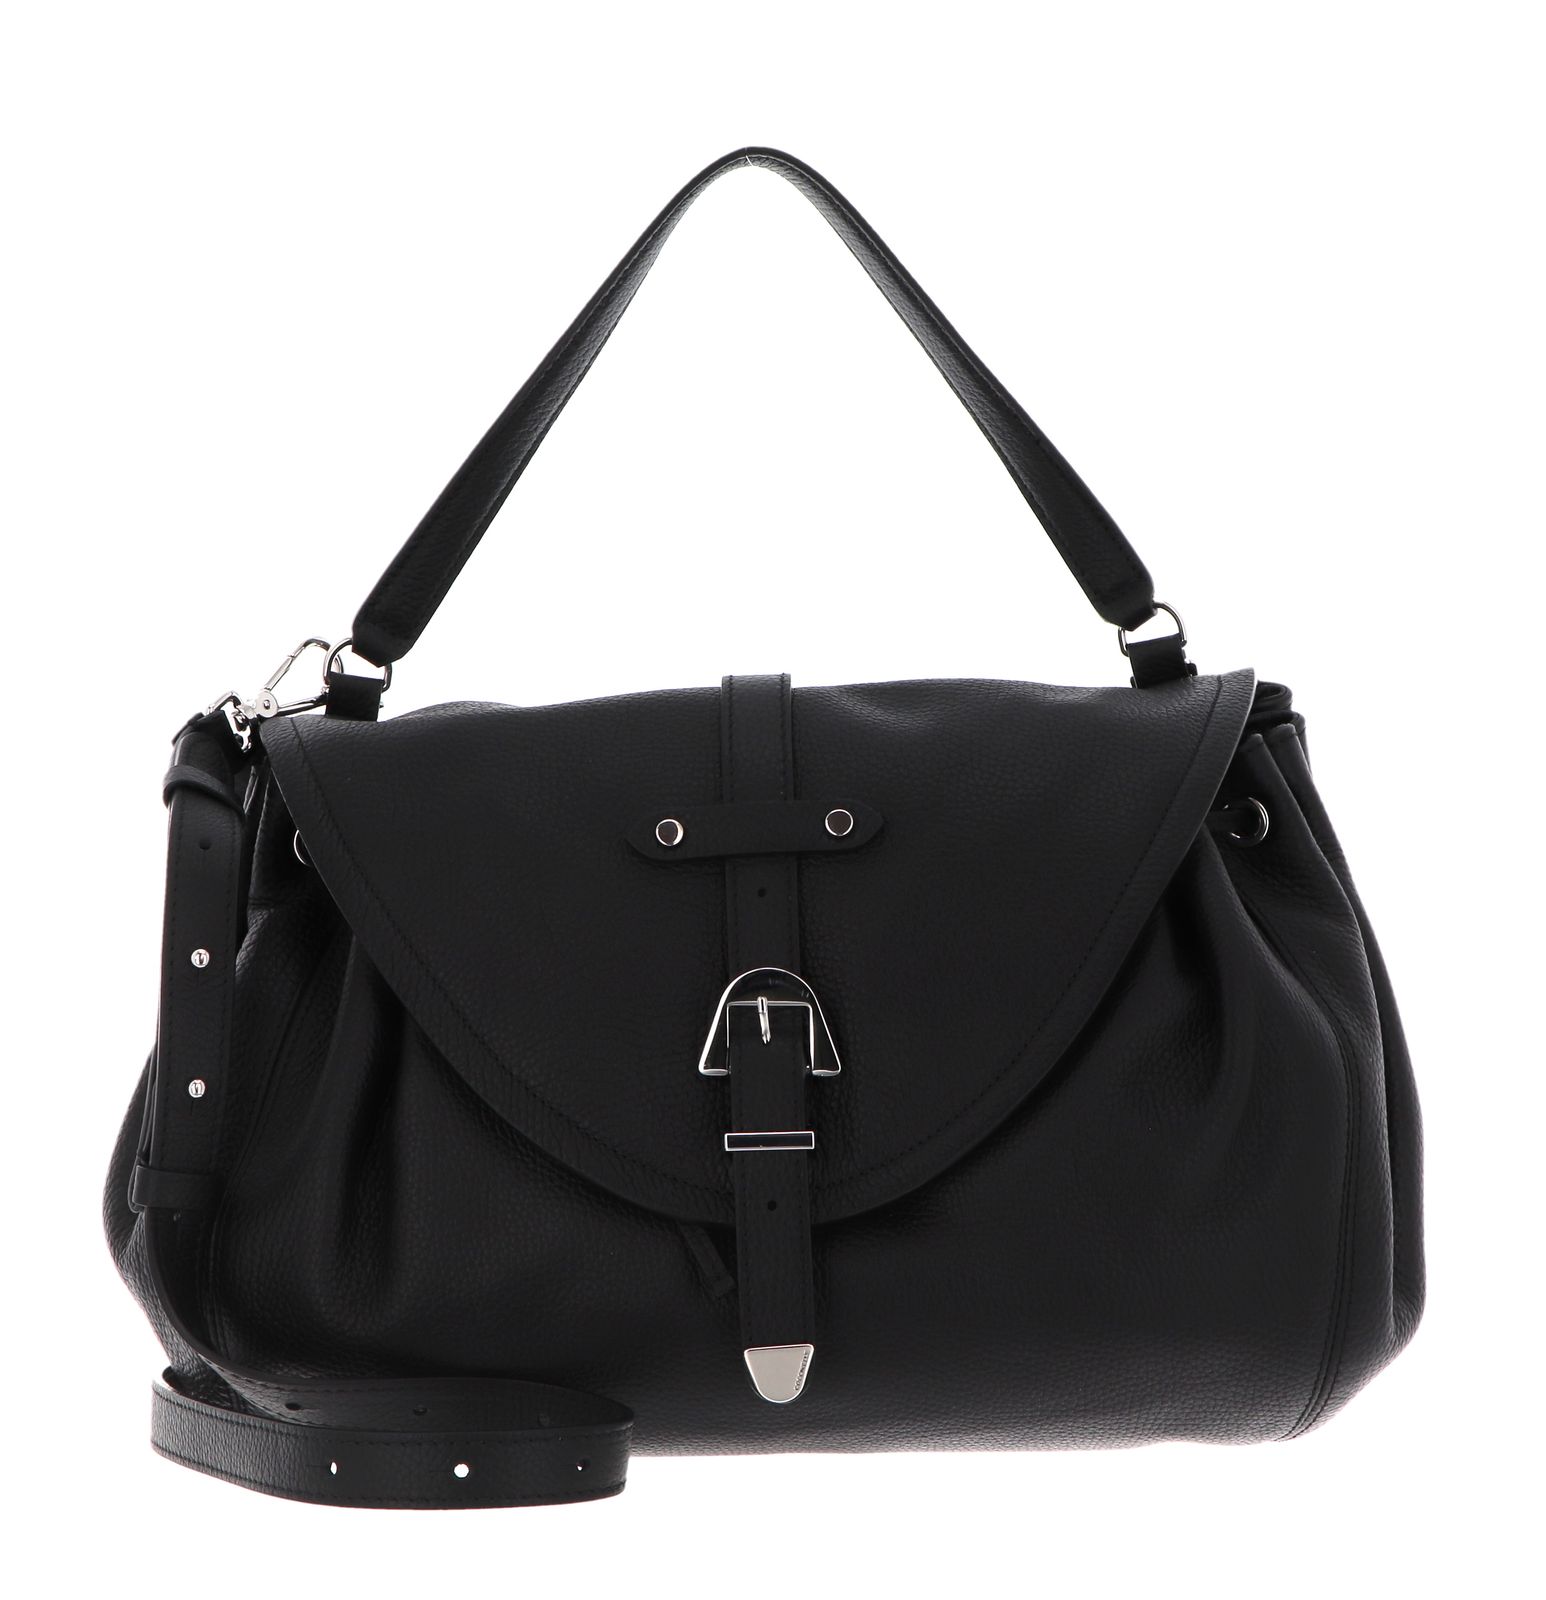 COCCINELLE shoulder bag Alegoria Handbag Noir | Buy bags, purses ...